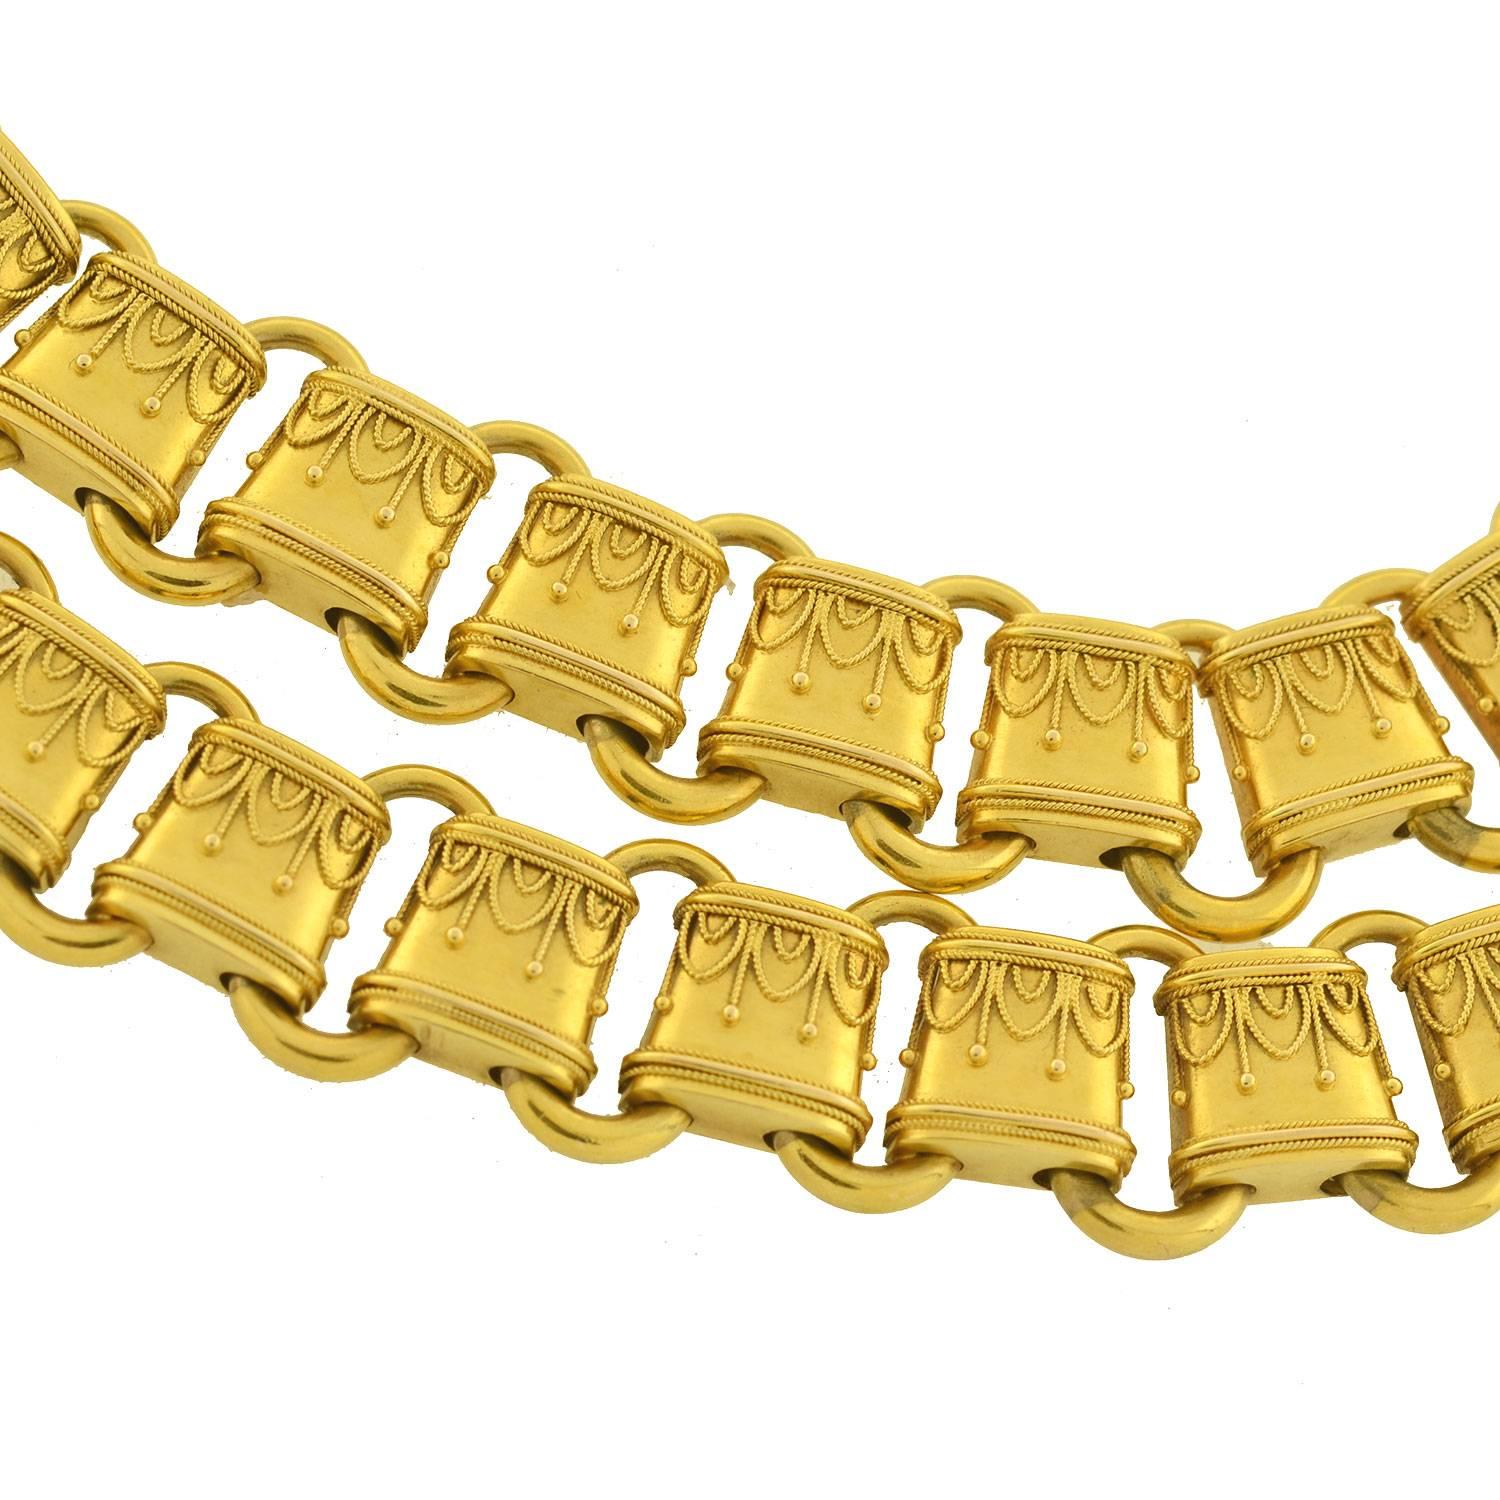 Diese goldene Buchkette aus der viktorianischen Ära (ca. 1880) ist ein ganz besonderes Stück! Der aus England stammende Anhänger ist handgefertigt und besteht aus leuchtendem 15-karätigem Gelbgold mit einem wunderschönen etruskischen Drahtmotiv auf